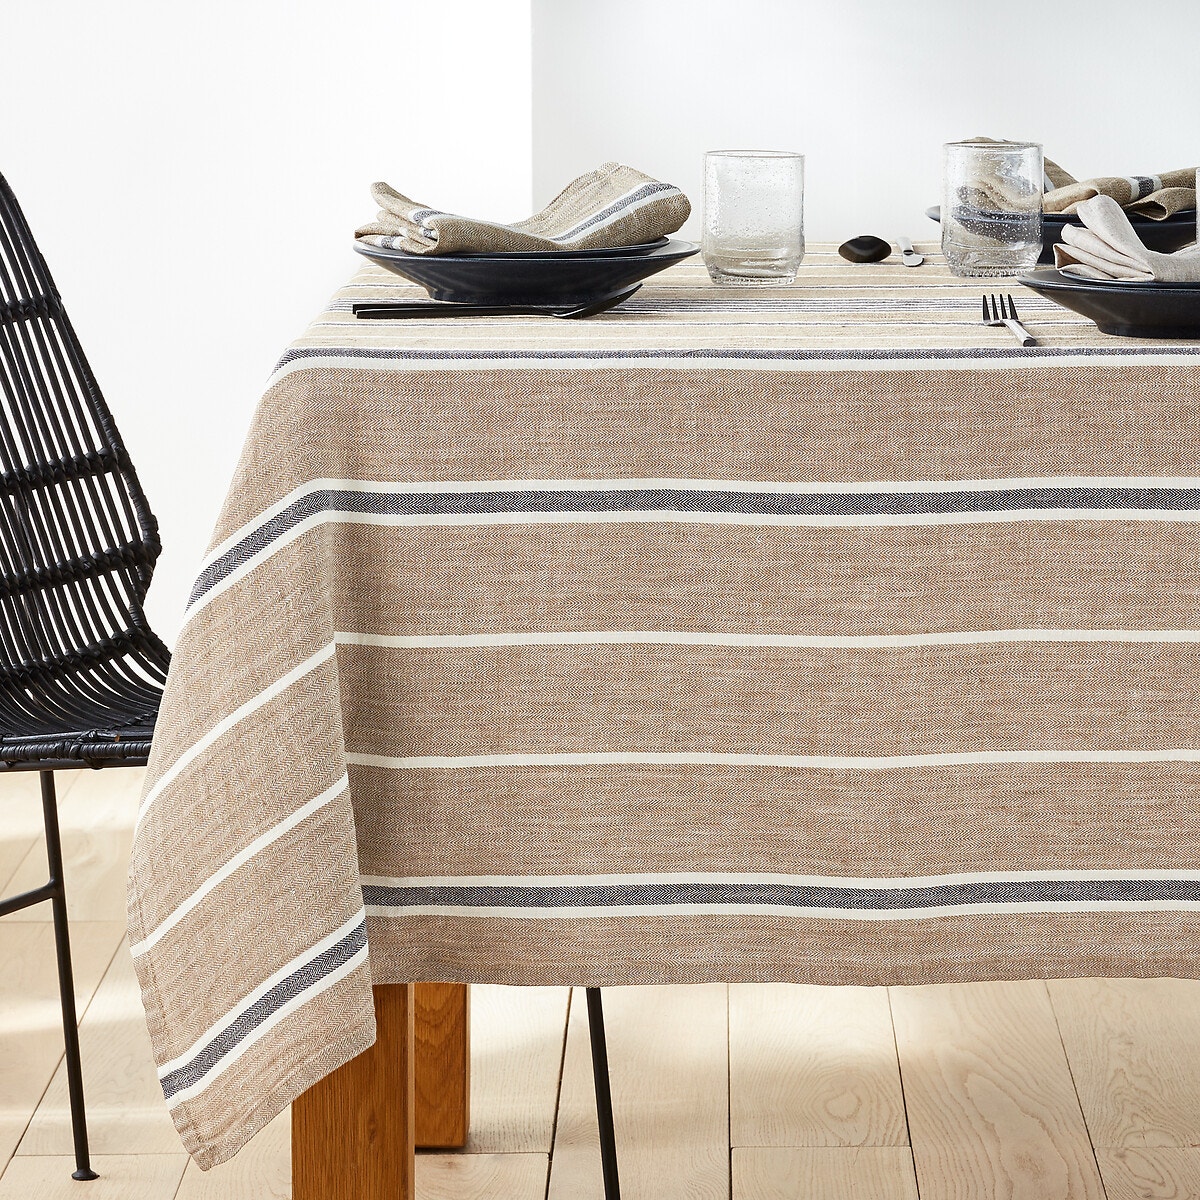 Σπίτι > Λευκά είδη > Κουζίνα > Τραπεζομάντηλα Getaria Striped 100% Linen Tablecloth 150x250 cm